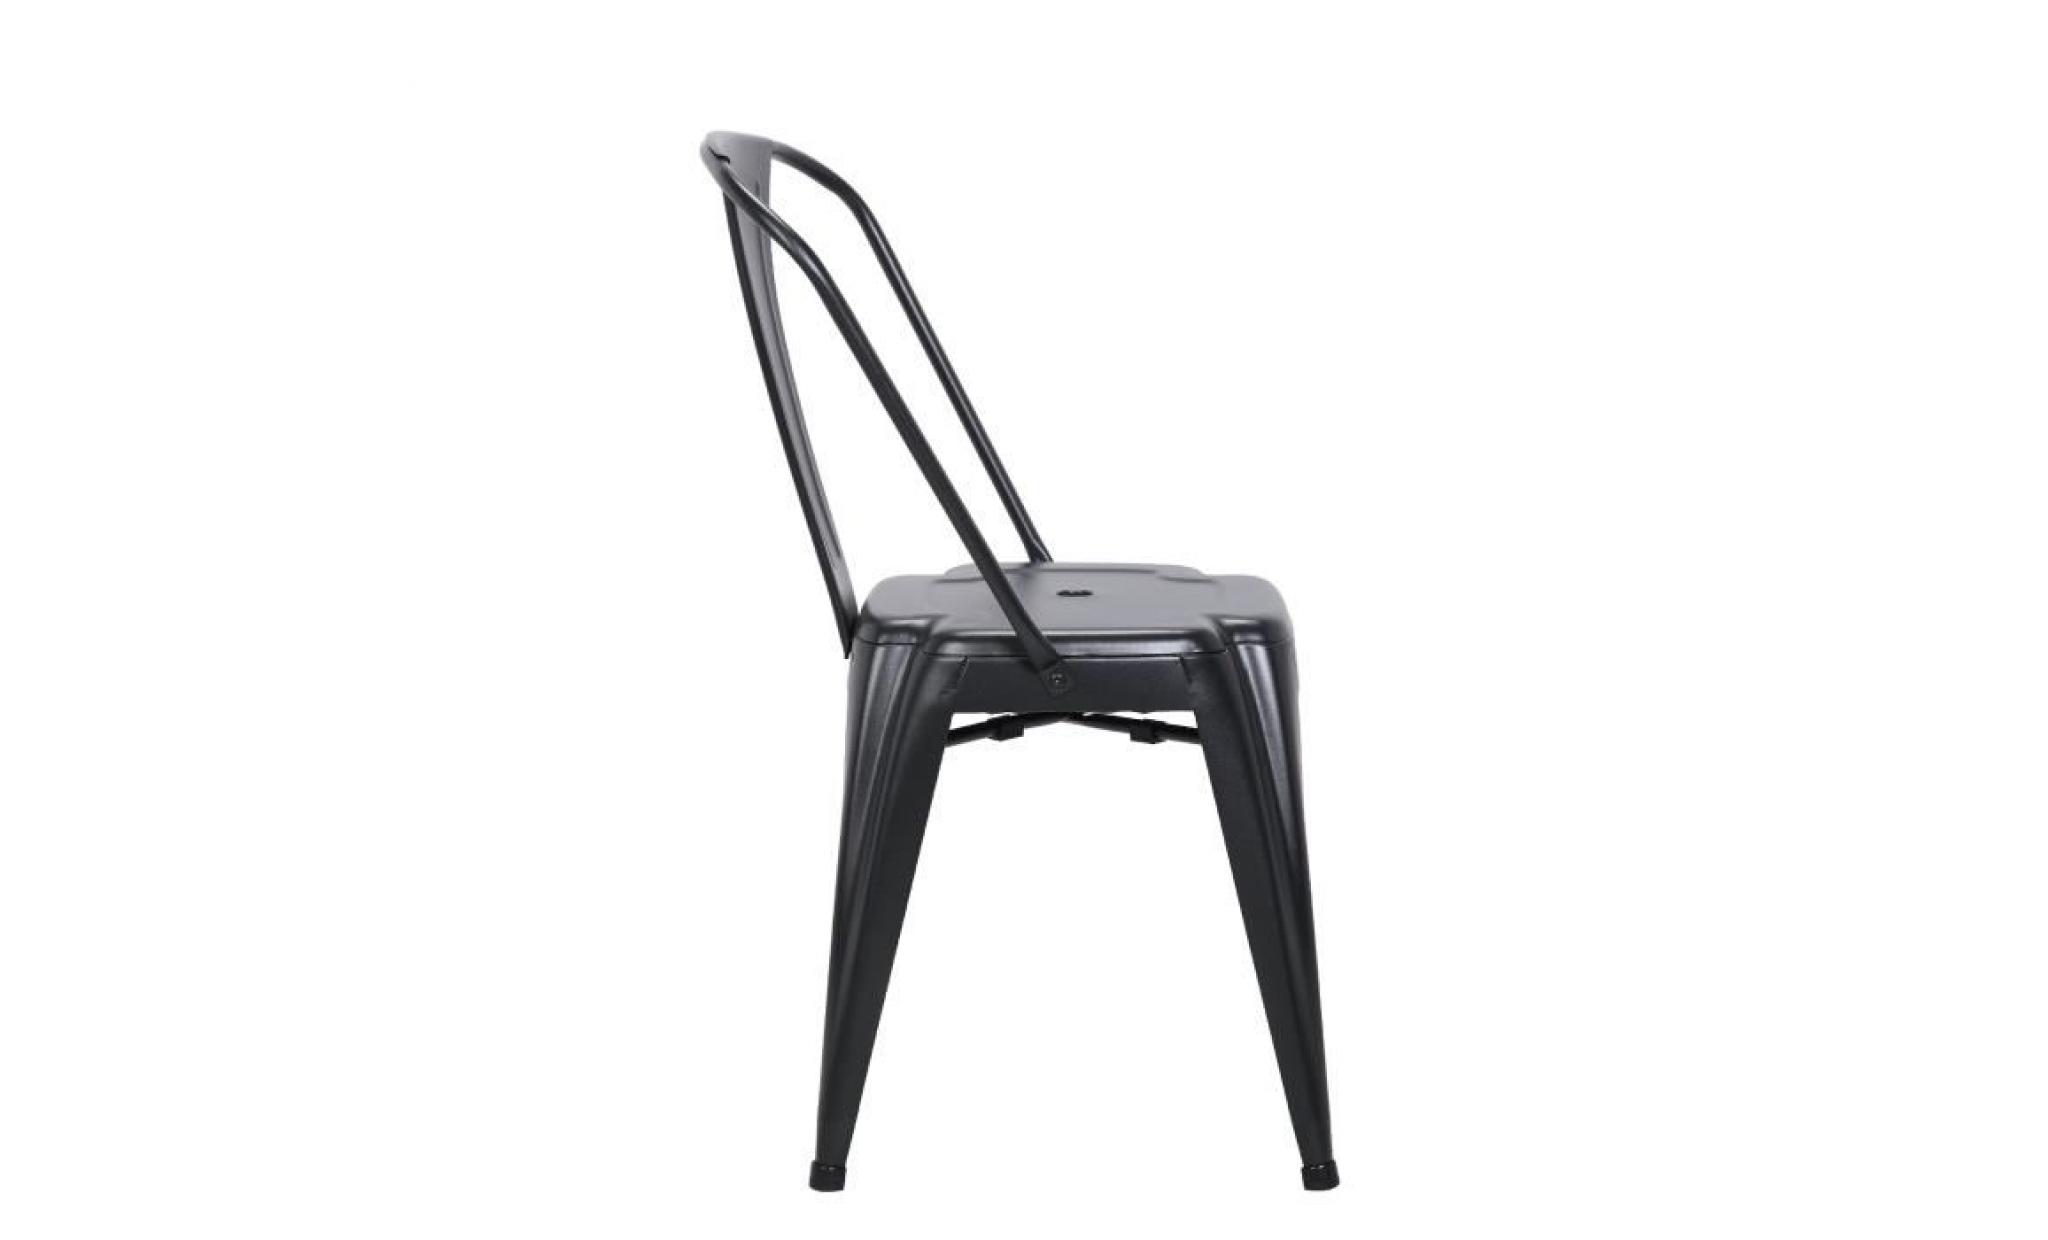 kayelles chaise metal industriel brook   lot de 2 chaises bistrot (noir) pas cher